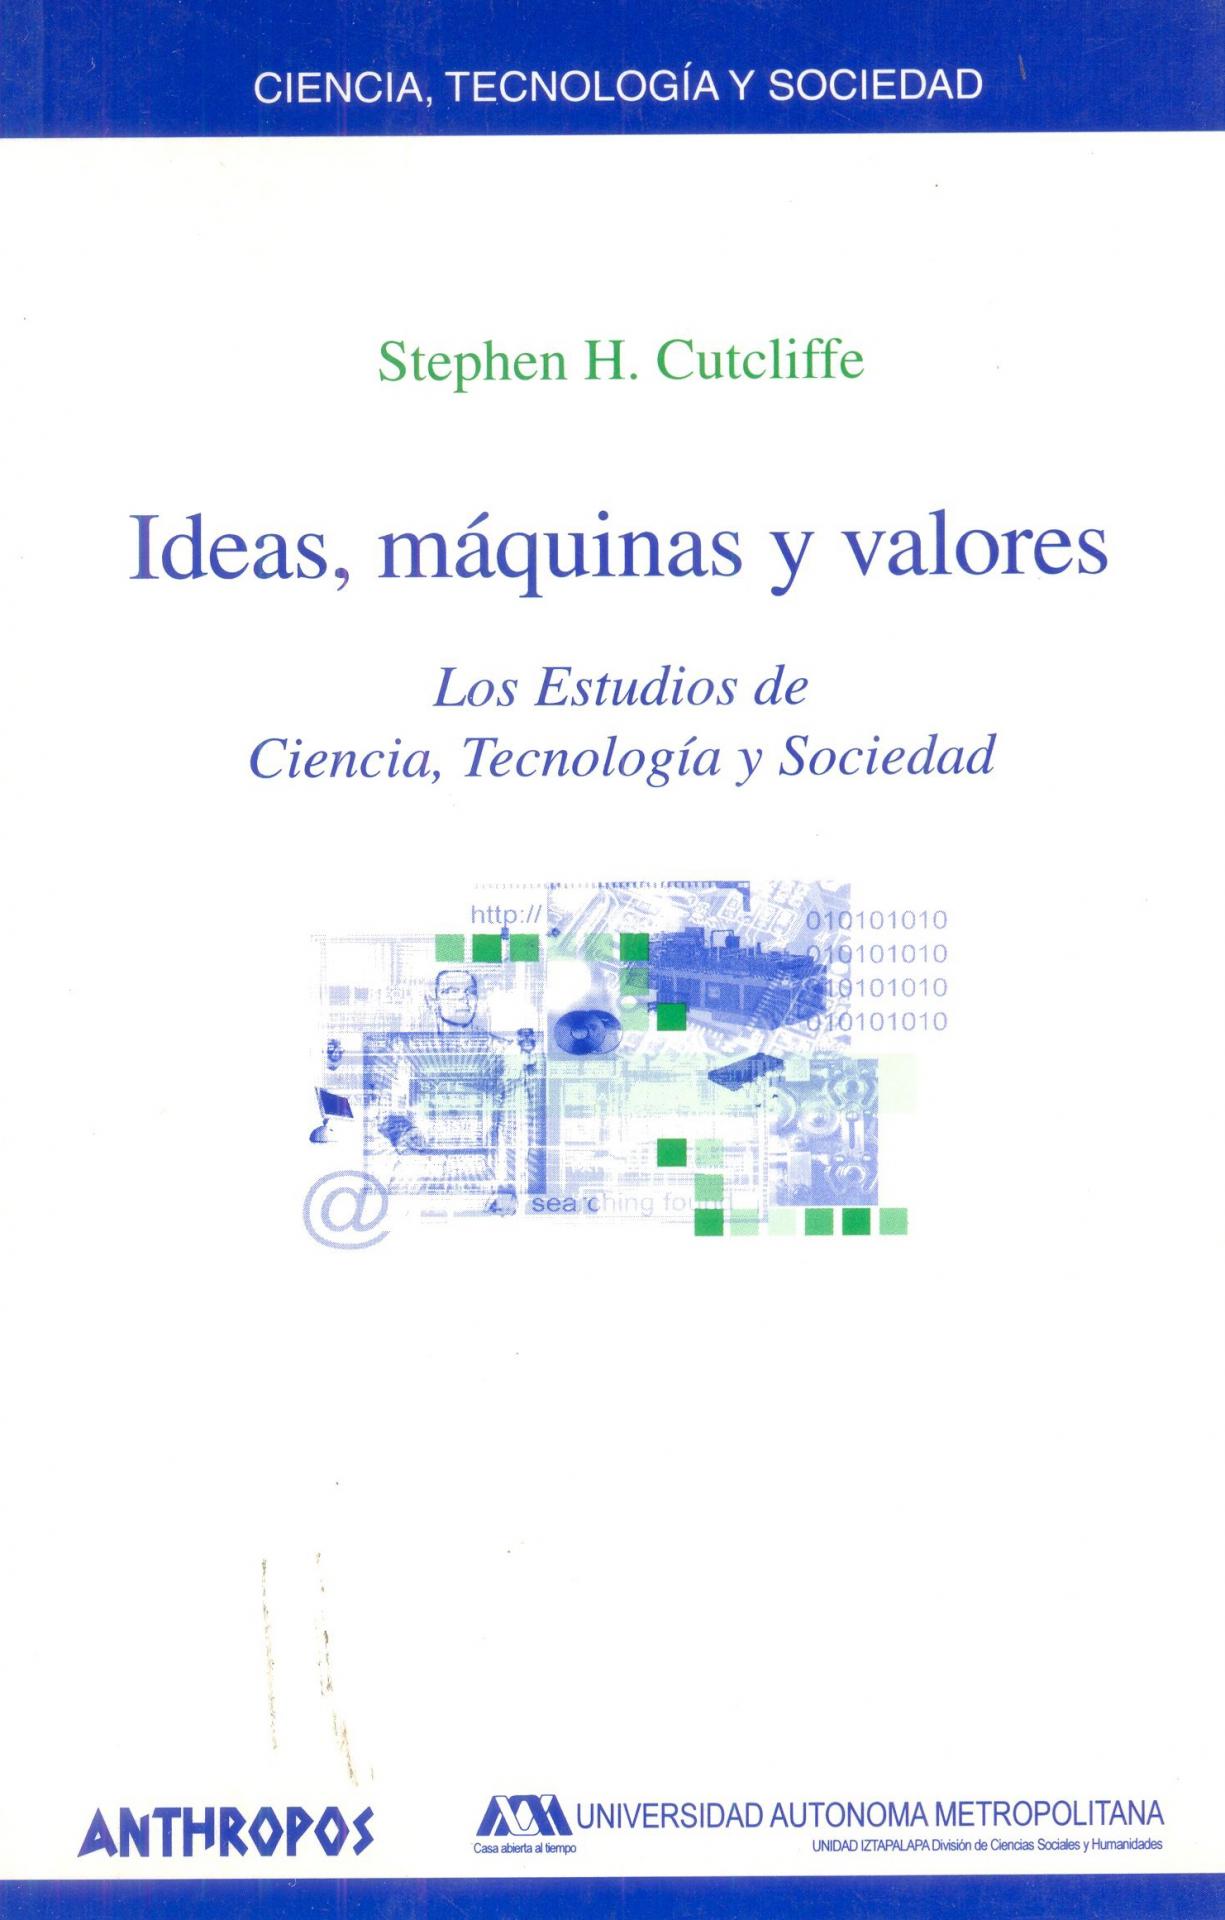 IDEAS, MÁQUINAS Y VALORES. Los estudios de Ciencia, Tecnología y Sociedad. Cutcliffe, S.